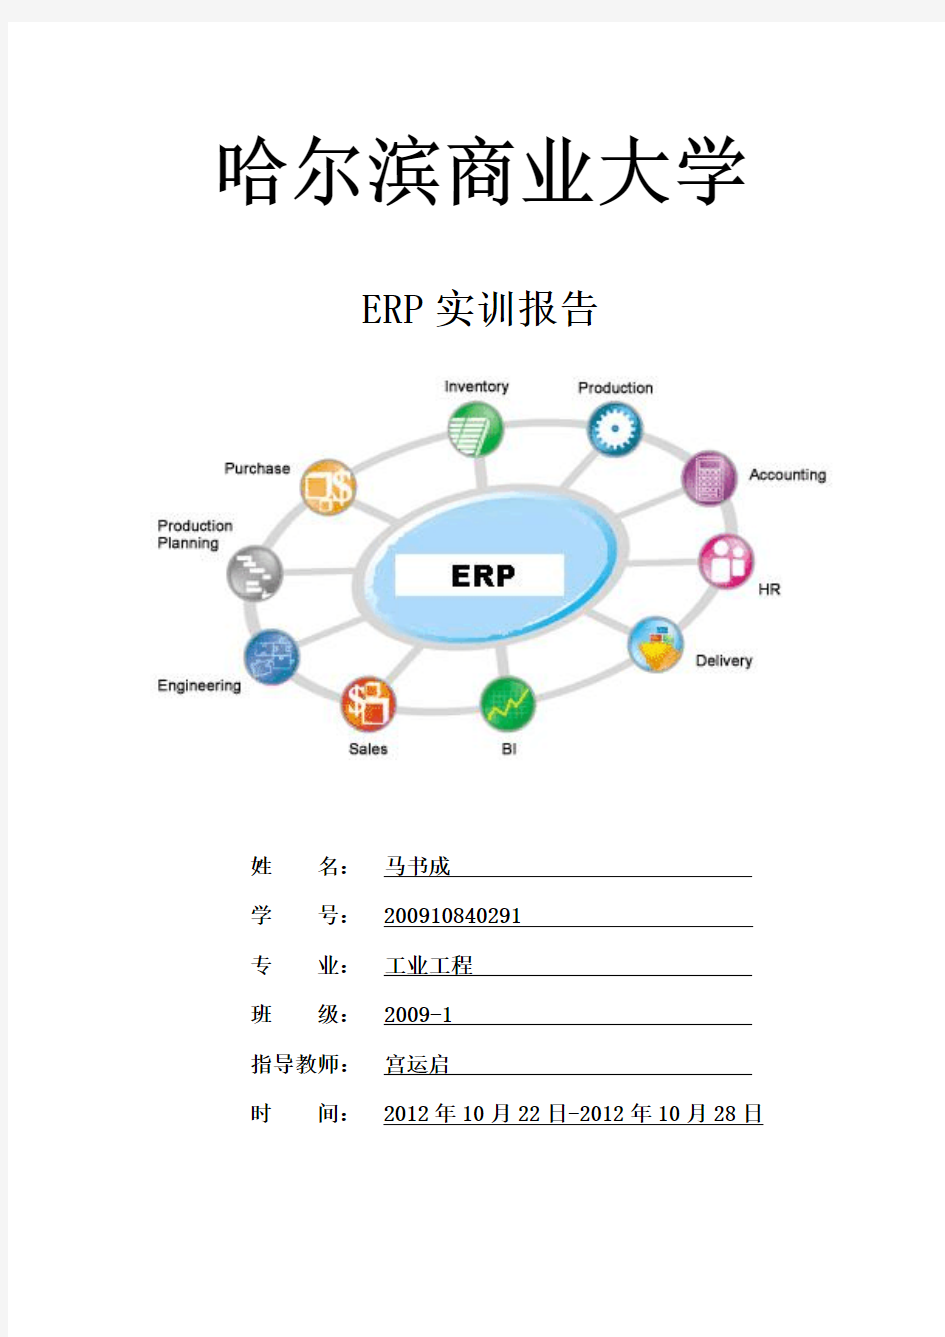 哈尔滨商业大学企业资源计划(ERP)实训报告